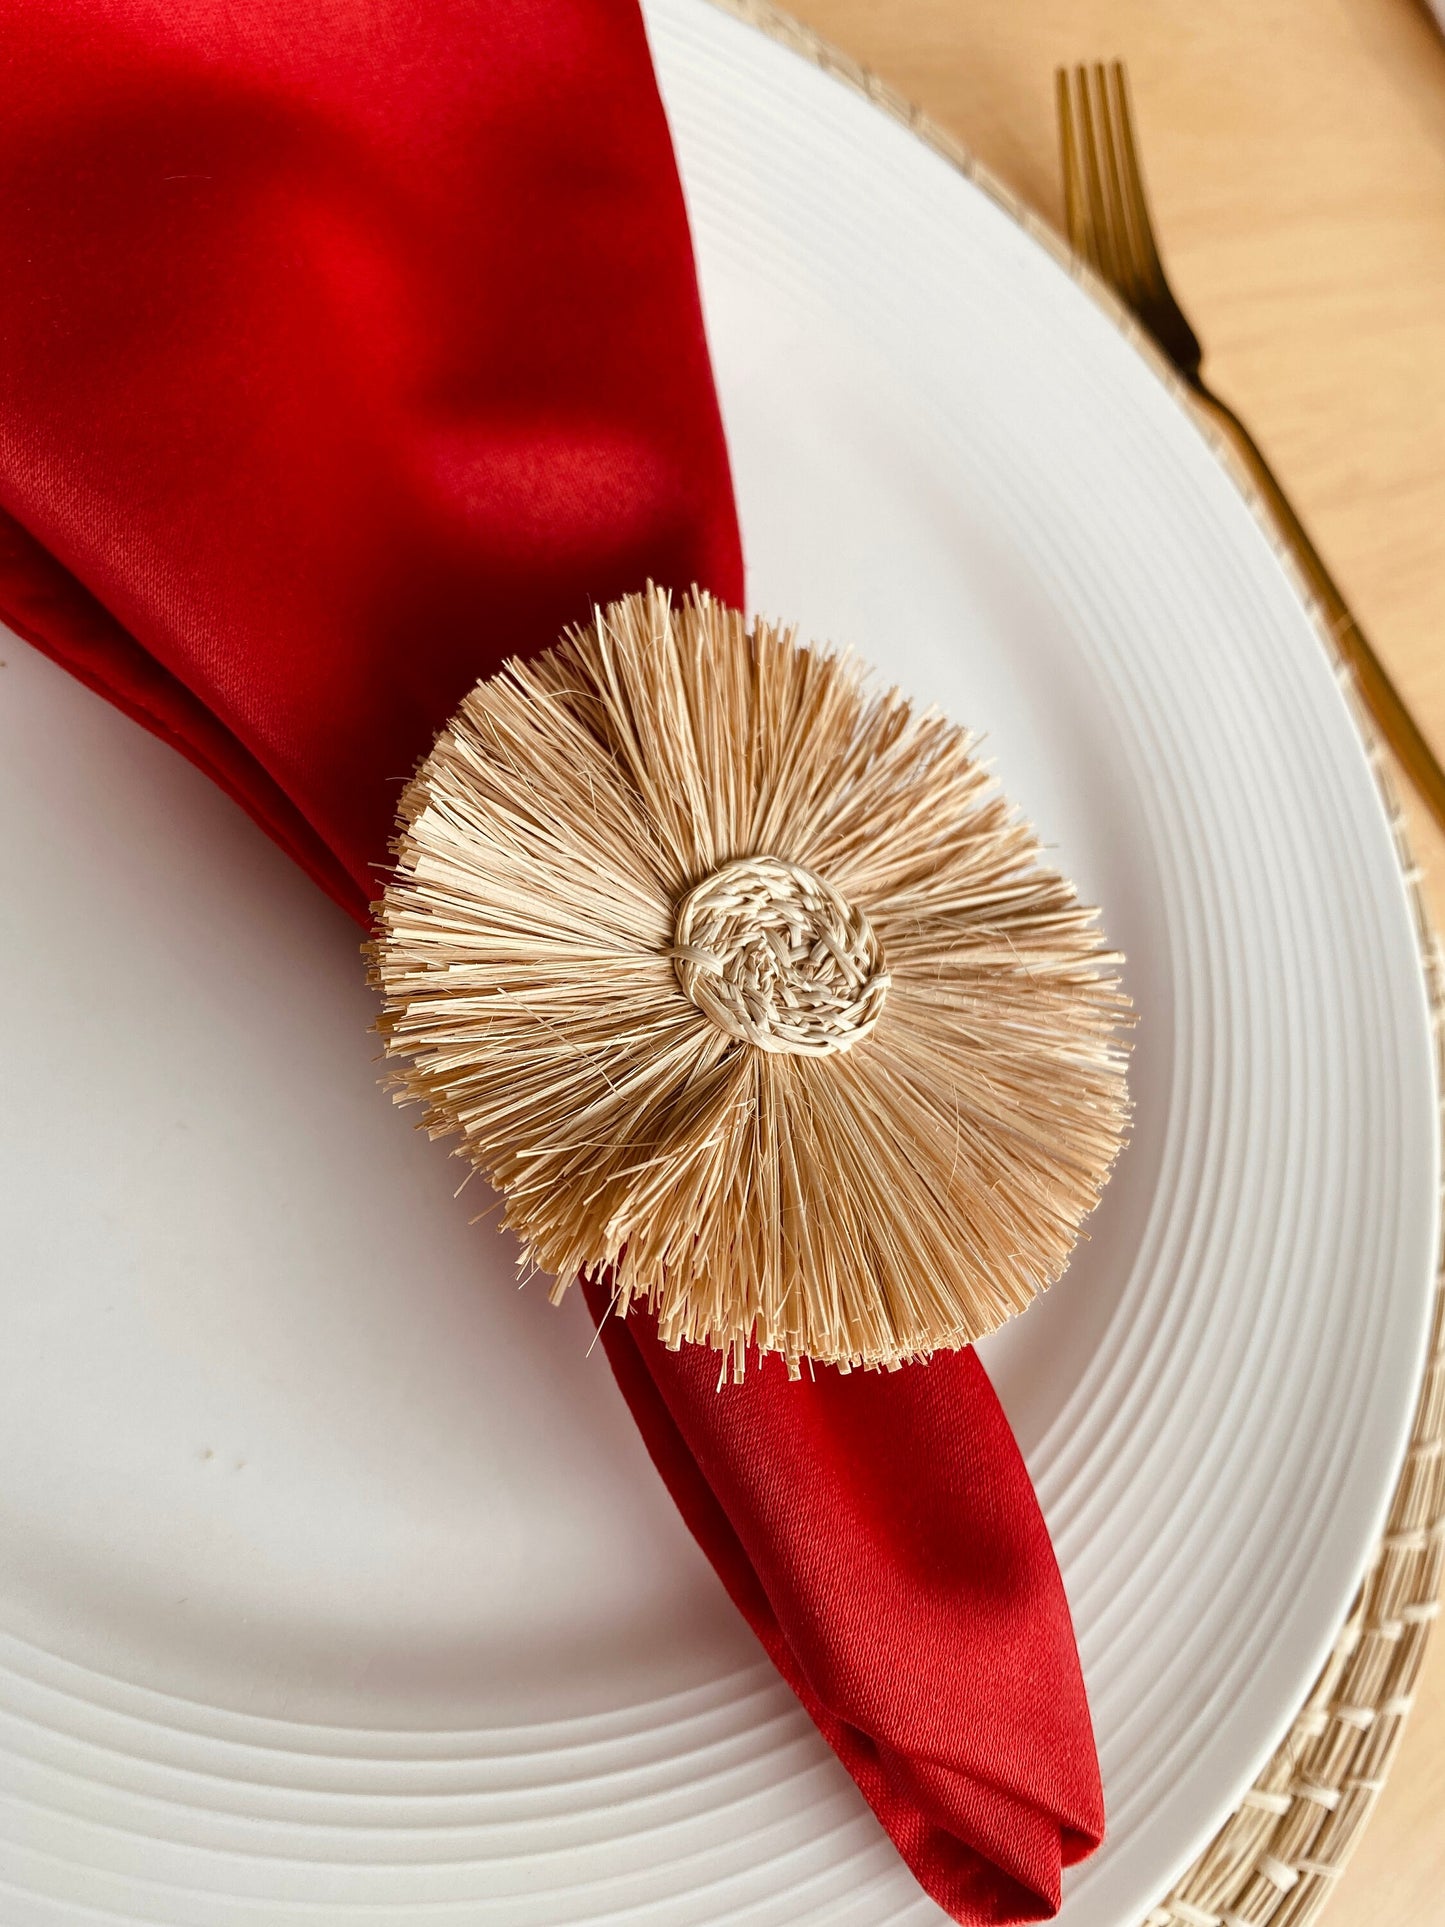 Sunflower Napkin Ring - Iraca Palm, 100% handmade napkin holder for table decor